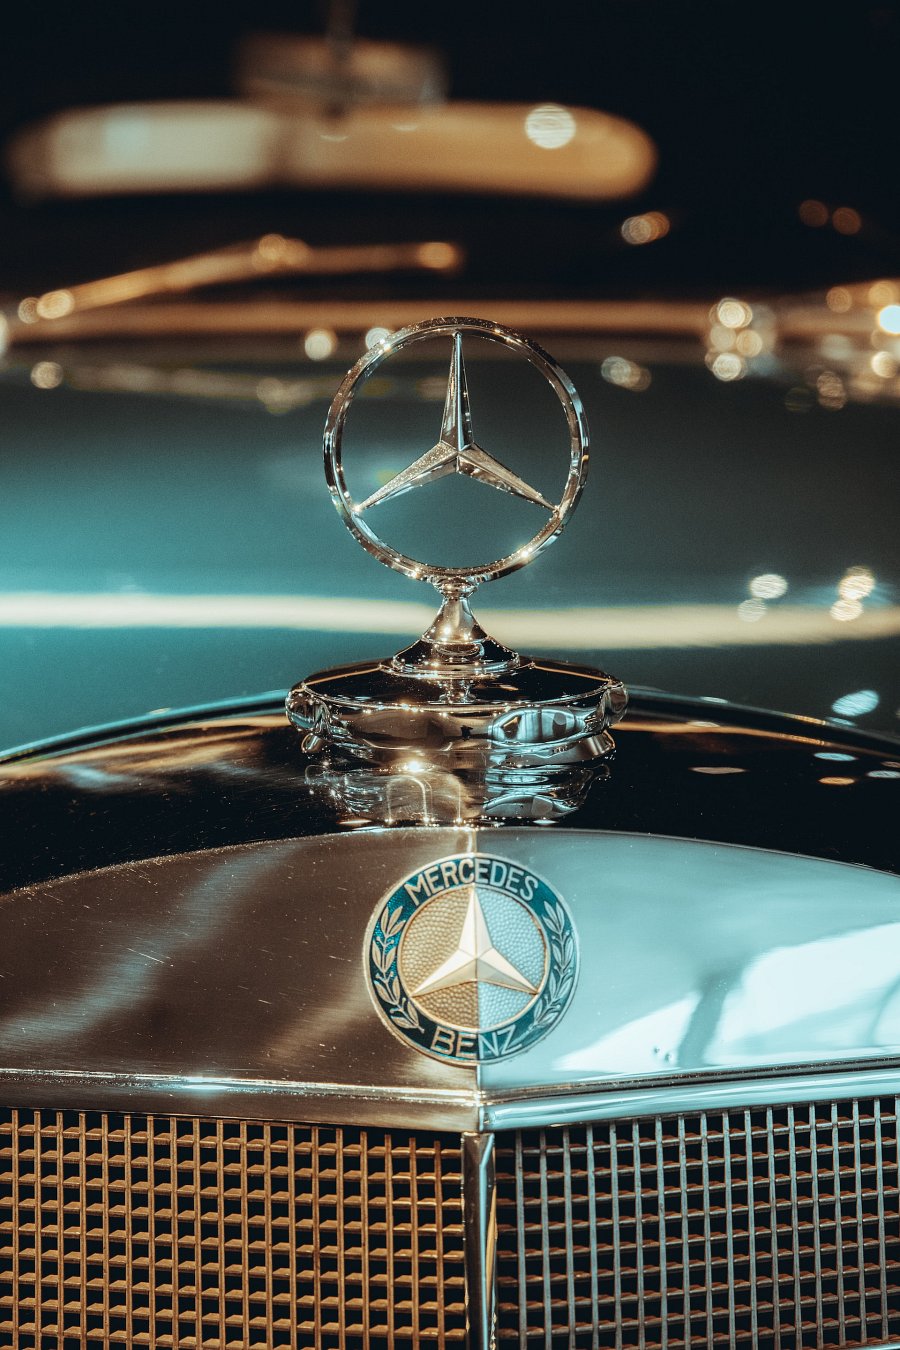 gdzie powstał pierwszy salon Mercedesa?